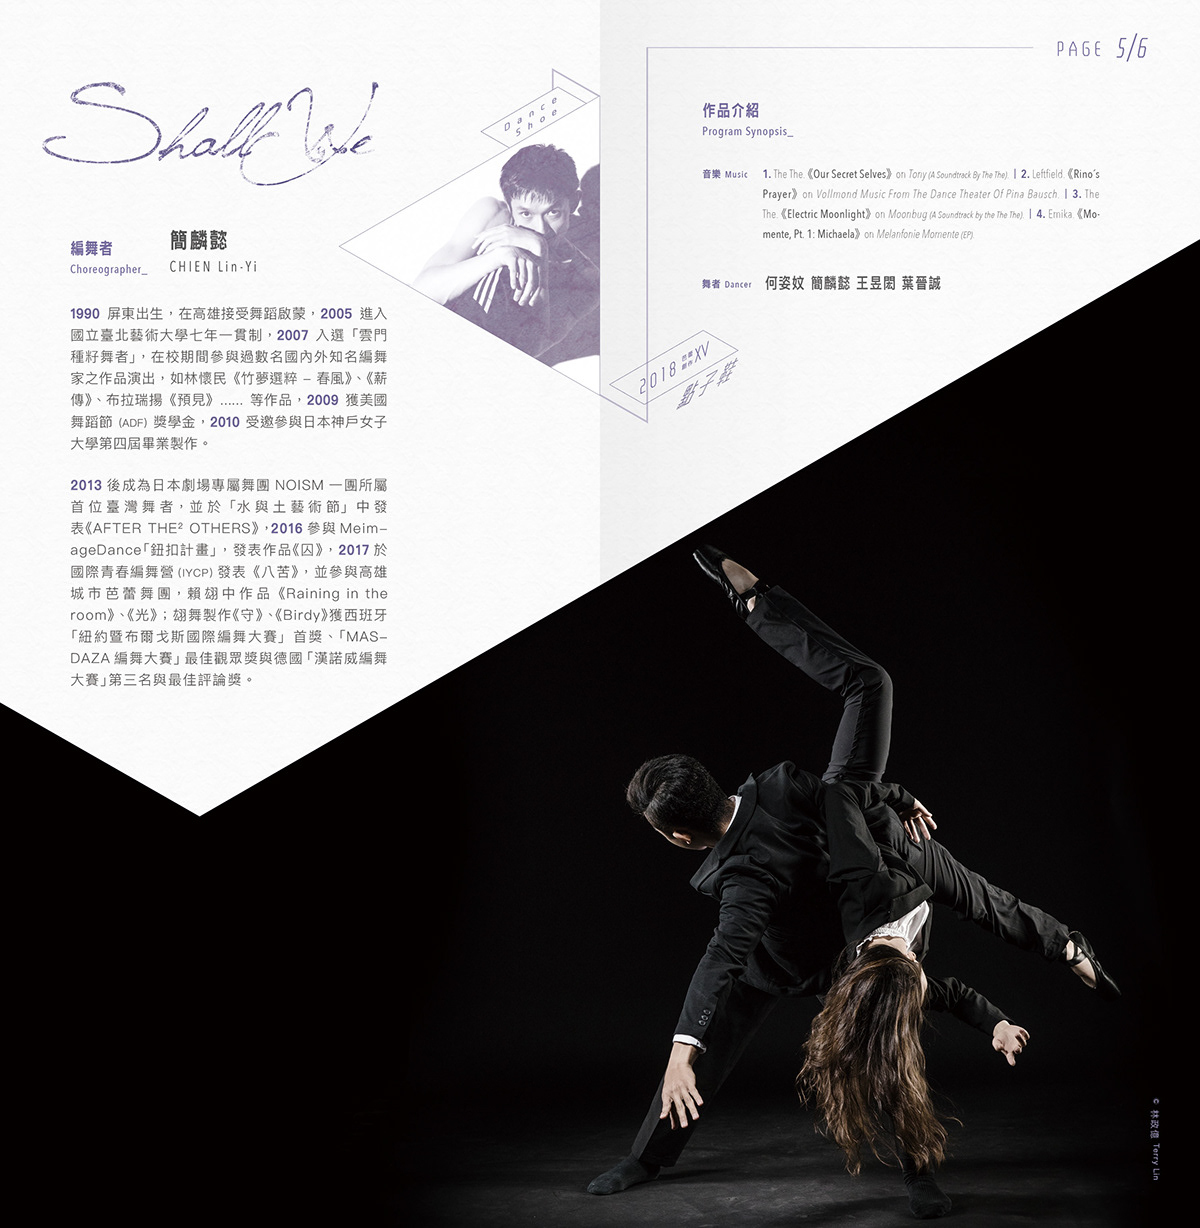 創作芭蕾 文宣設計 平面設計 舞蹈文宣 主視覺設計 typography   graphic design  林誼璇 Yi-Syuan Lin 表演藝術